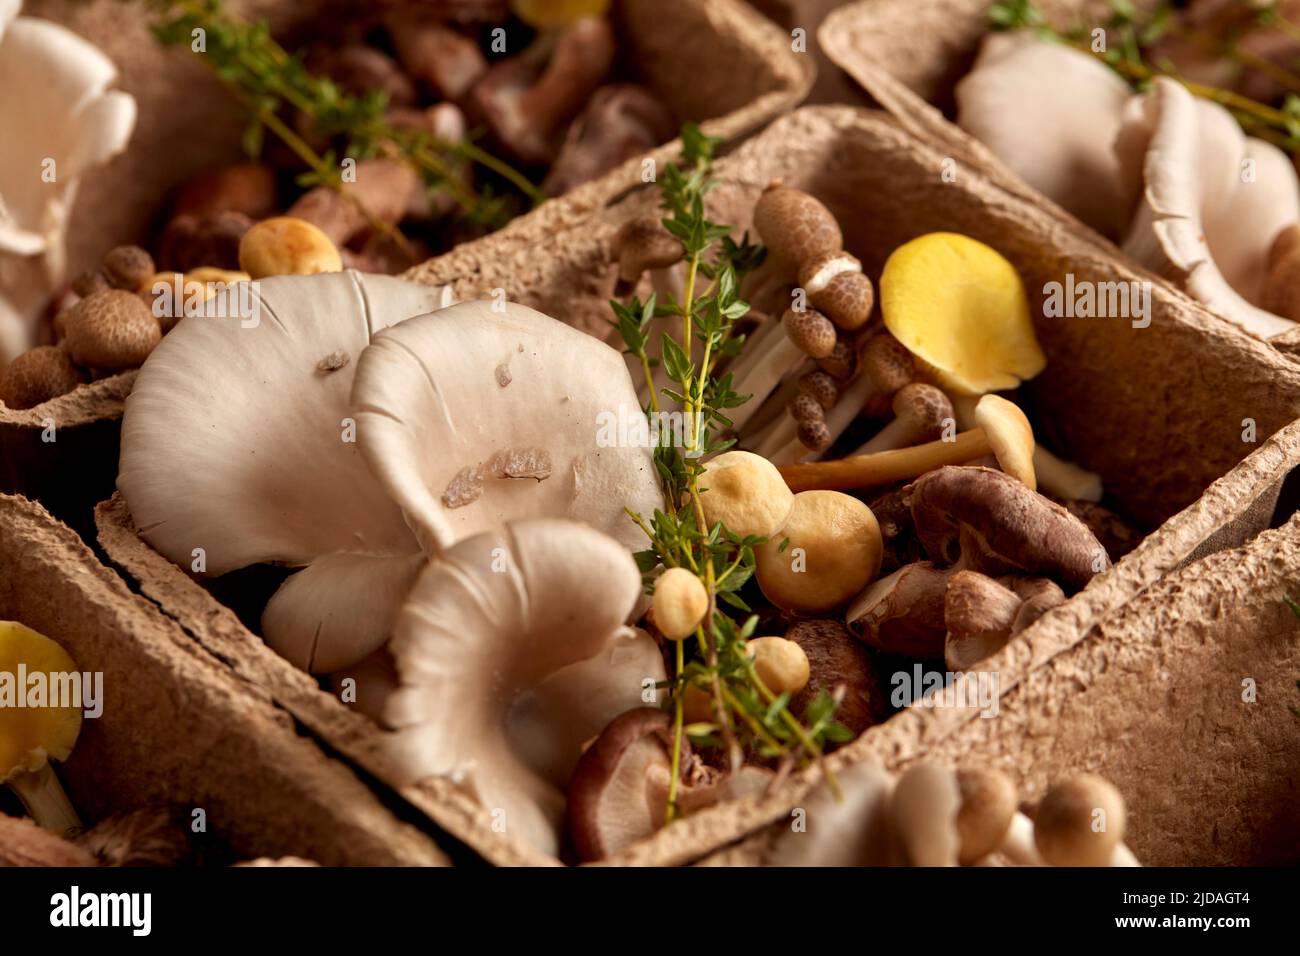 Primo piano di funghi commestibili in scatola di cartone, funghi commestibili coltivati ad un fungarium. Foto Stock